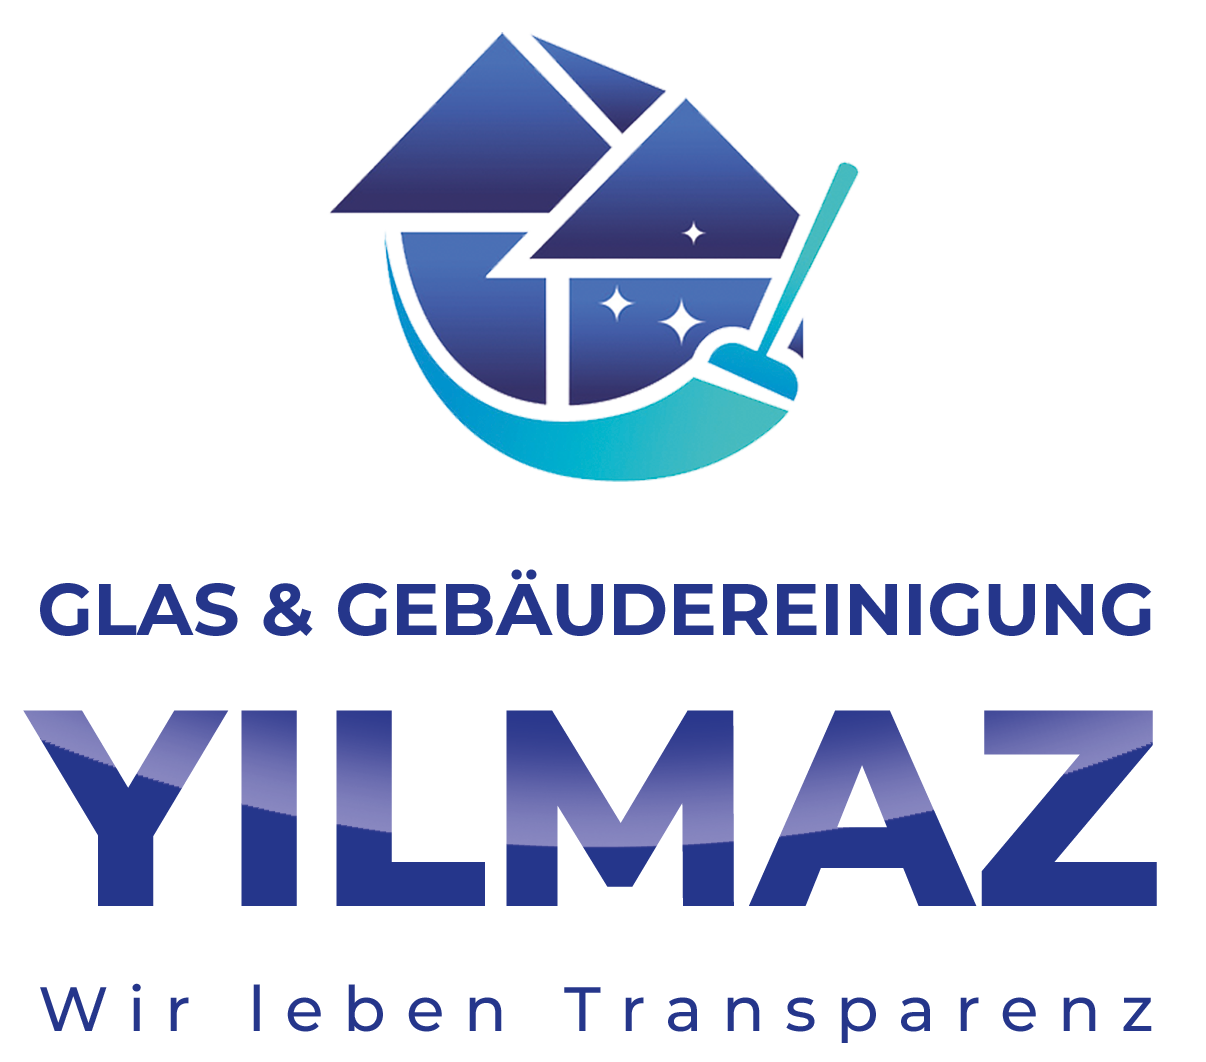 Glas- und Gebäudereinigung Yilmaz Footer